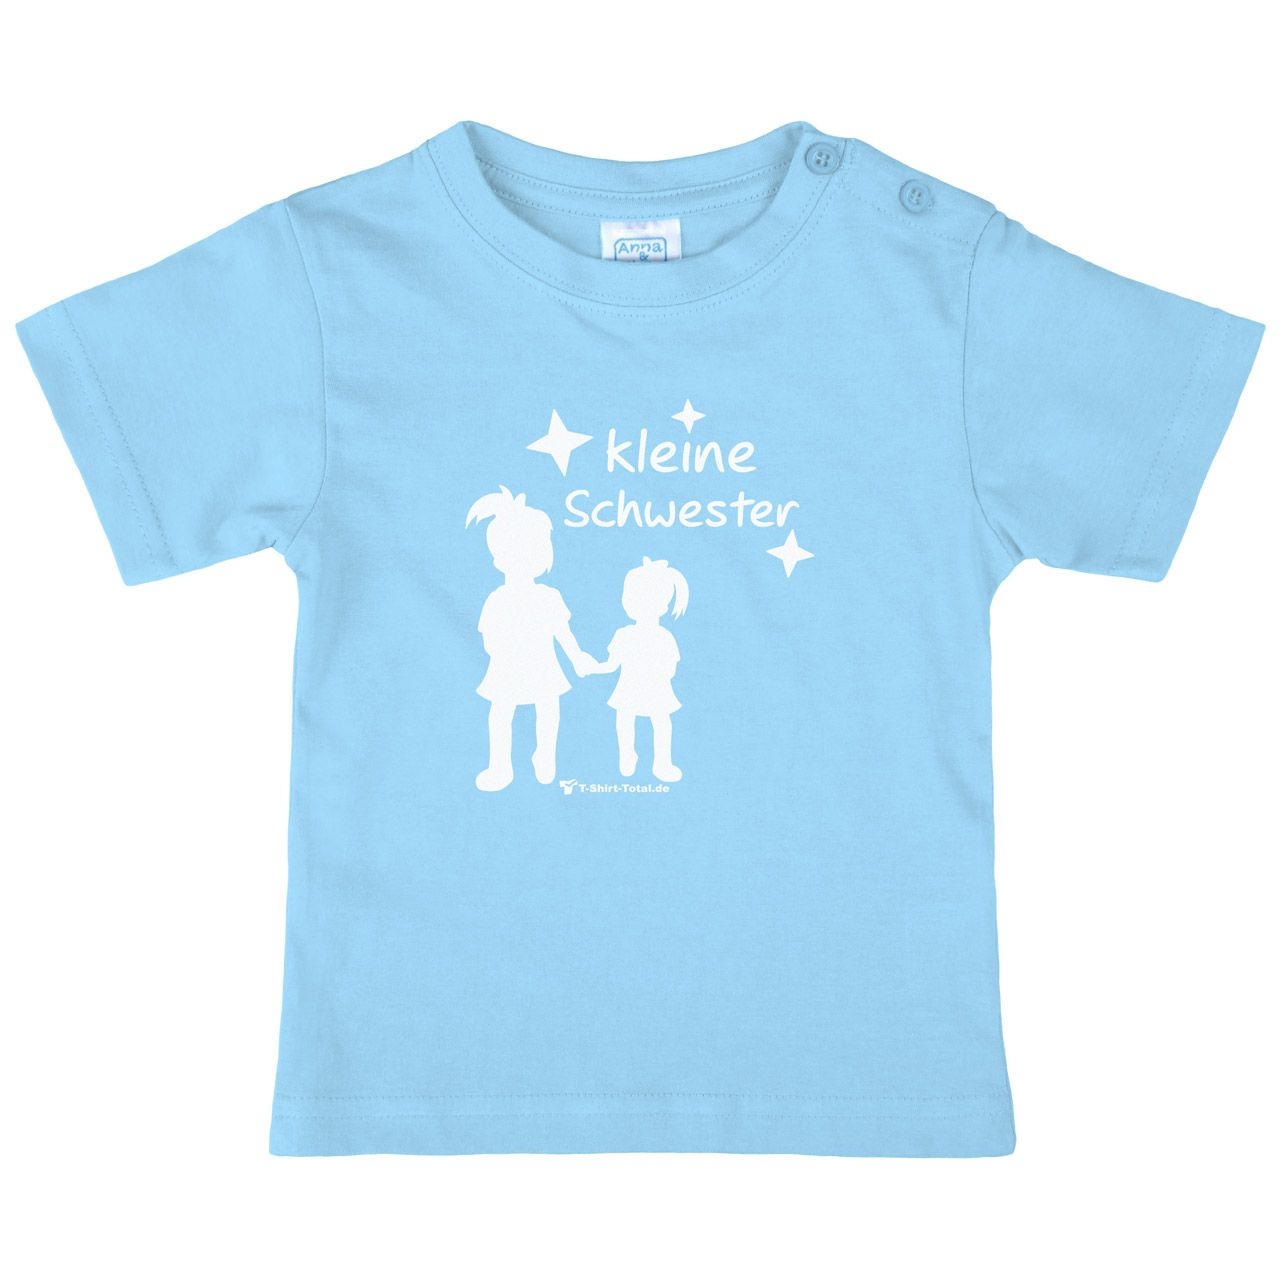 Kleine Schwester MM Kinder T-Shirt hellblau 68 / 74